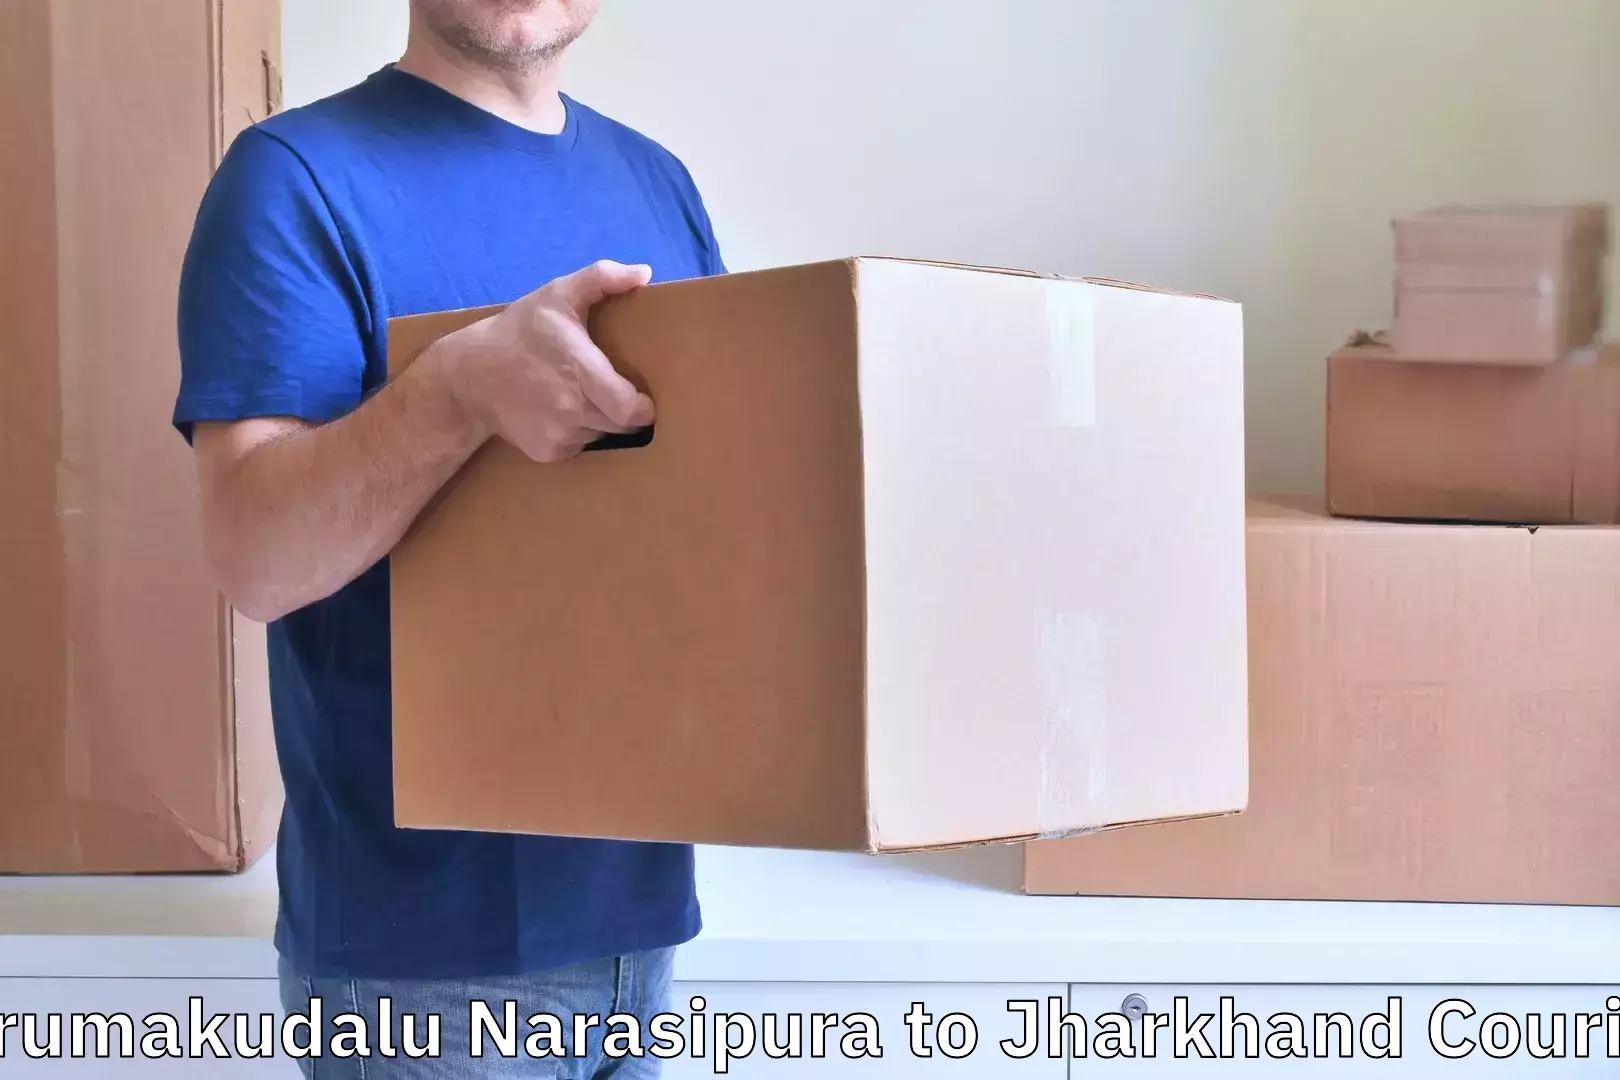 Customized luggage delivery Tirumakudalu Narasipura to Boarijore